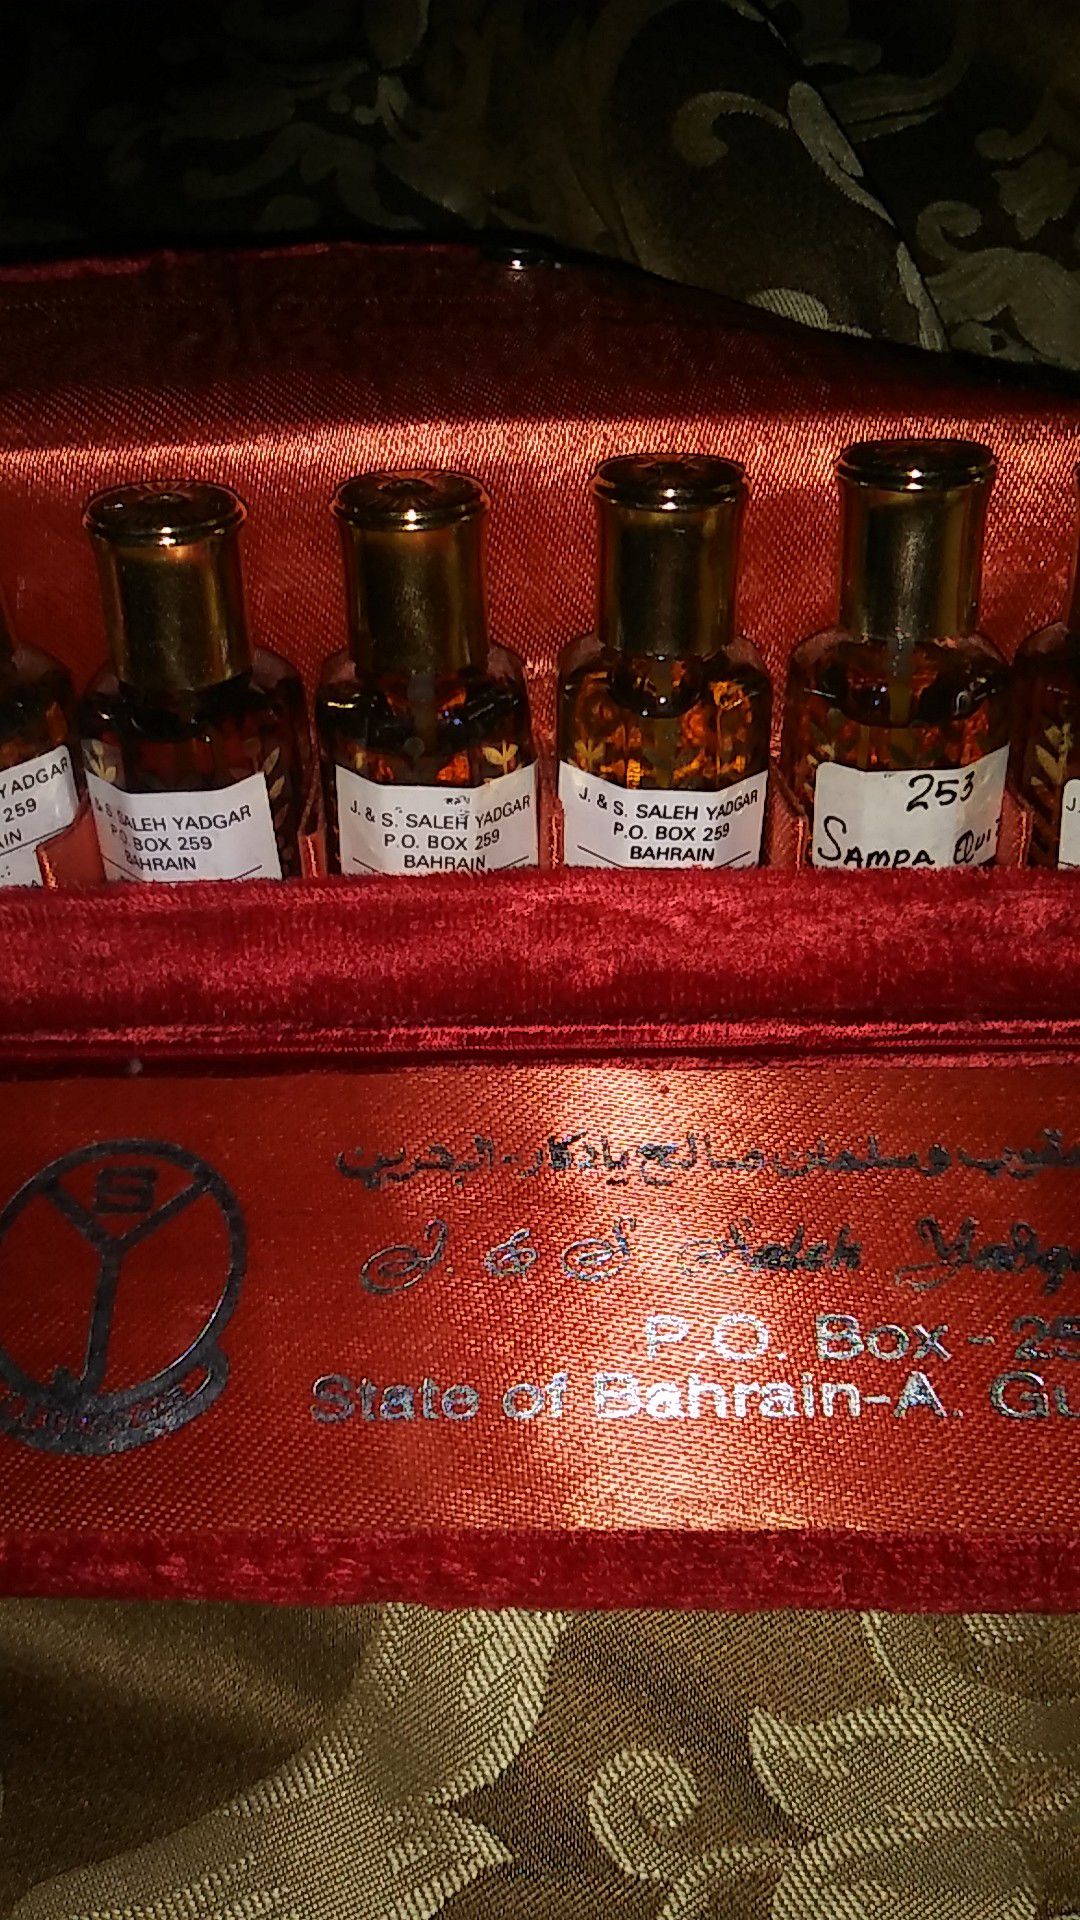 J & S Saleh Yadgar Bahrain Set of 6 Perfume Oils